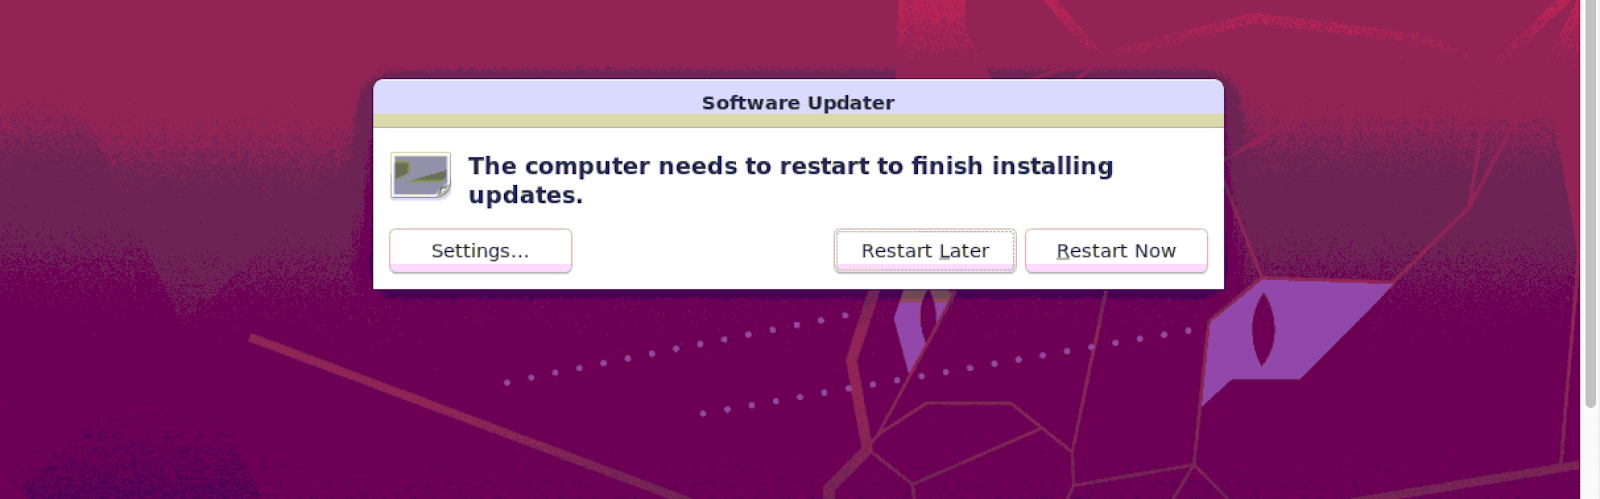 Update Ubuntu9